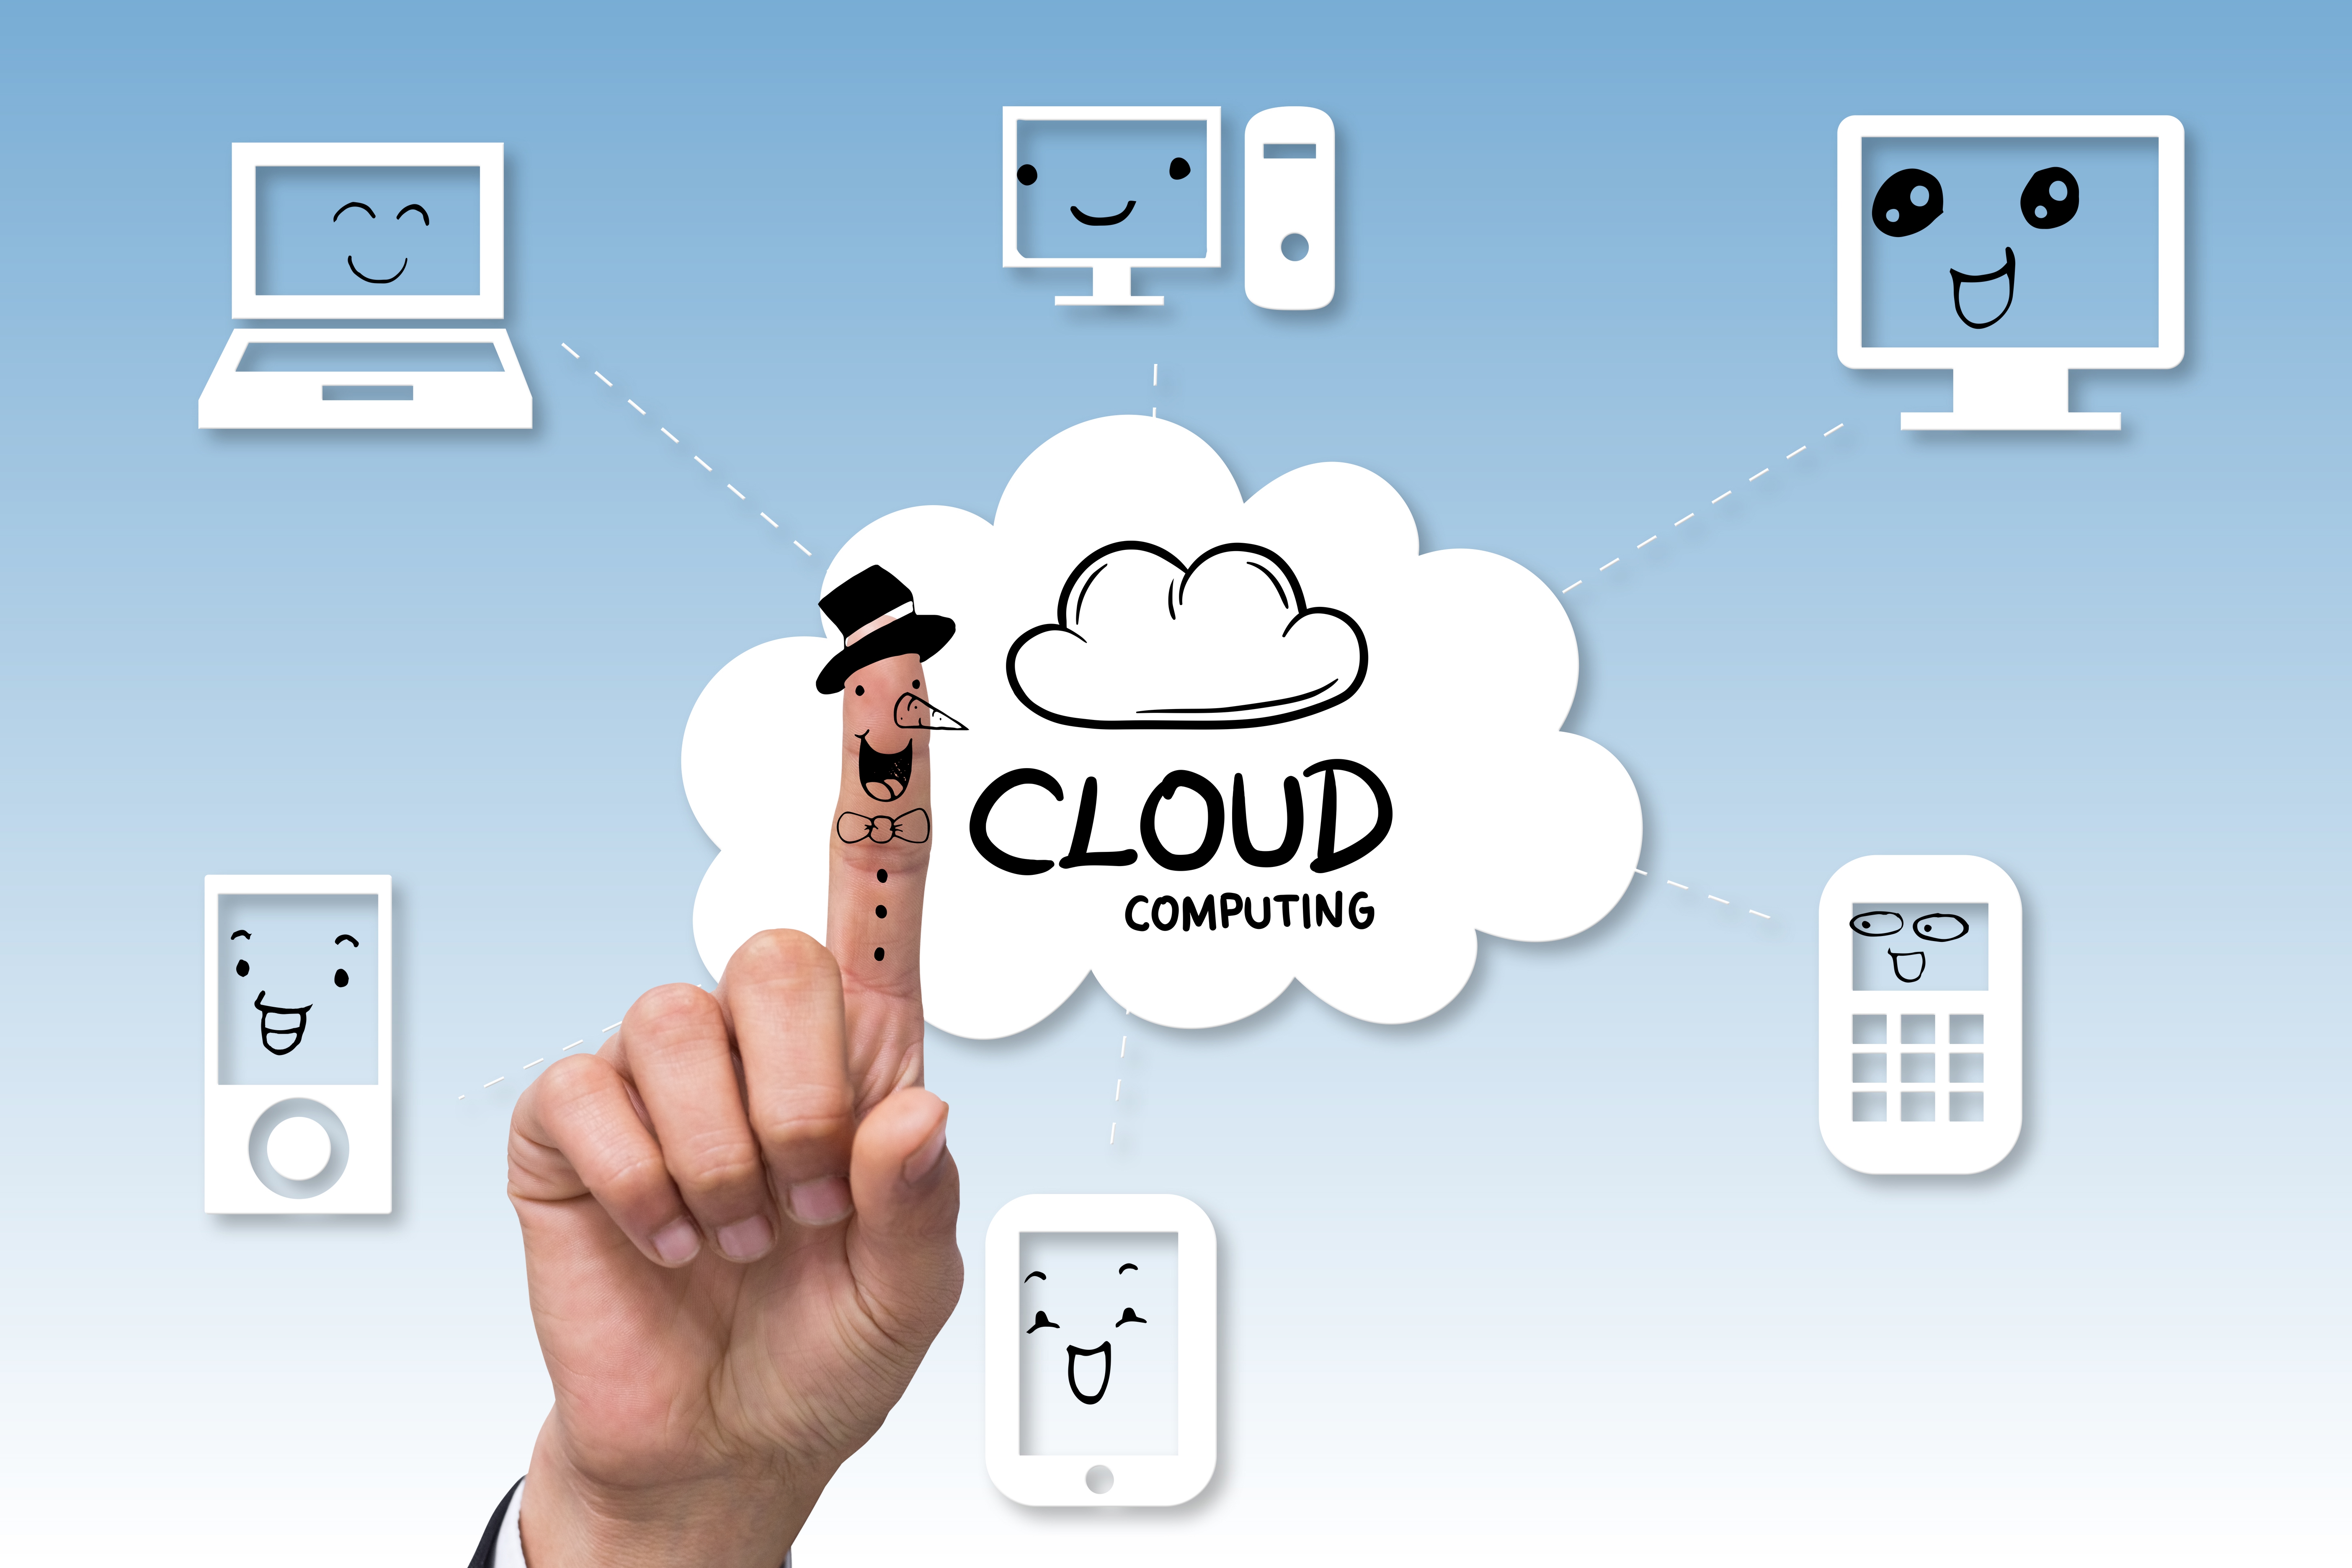 මොකක්ද ඇත්තටම මේ cloud computing කියන්නේ?